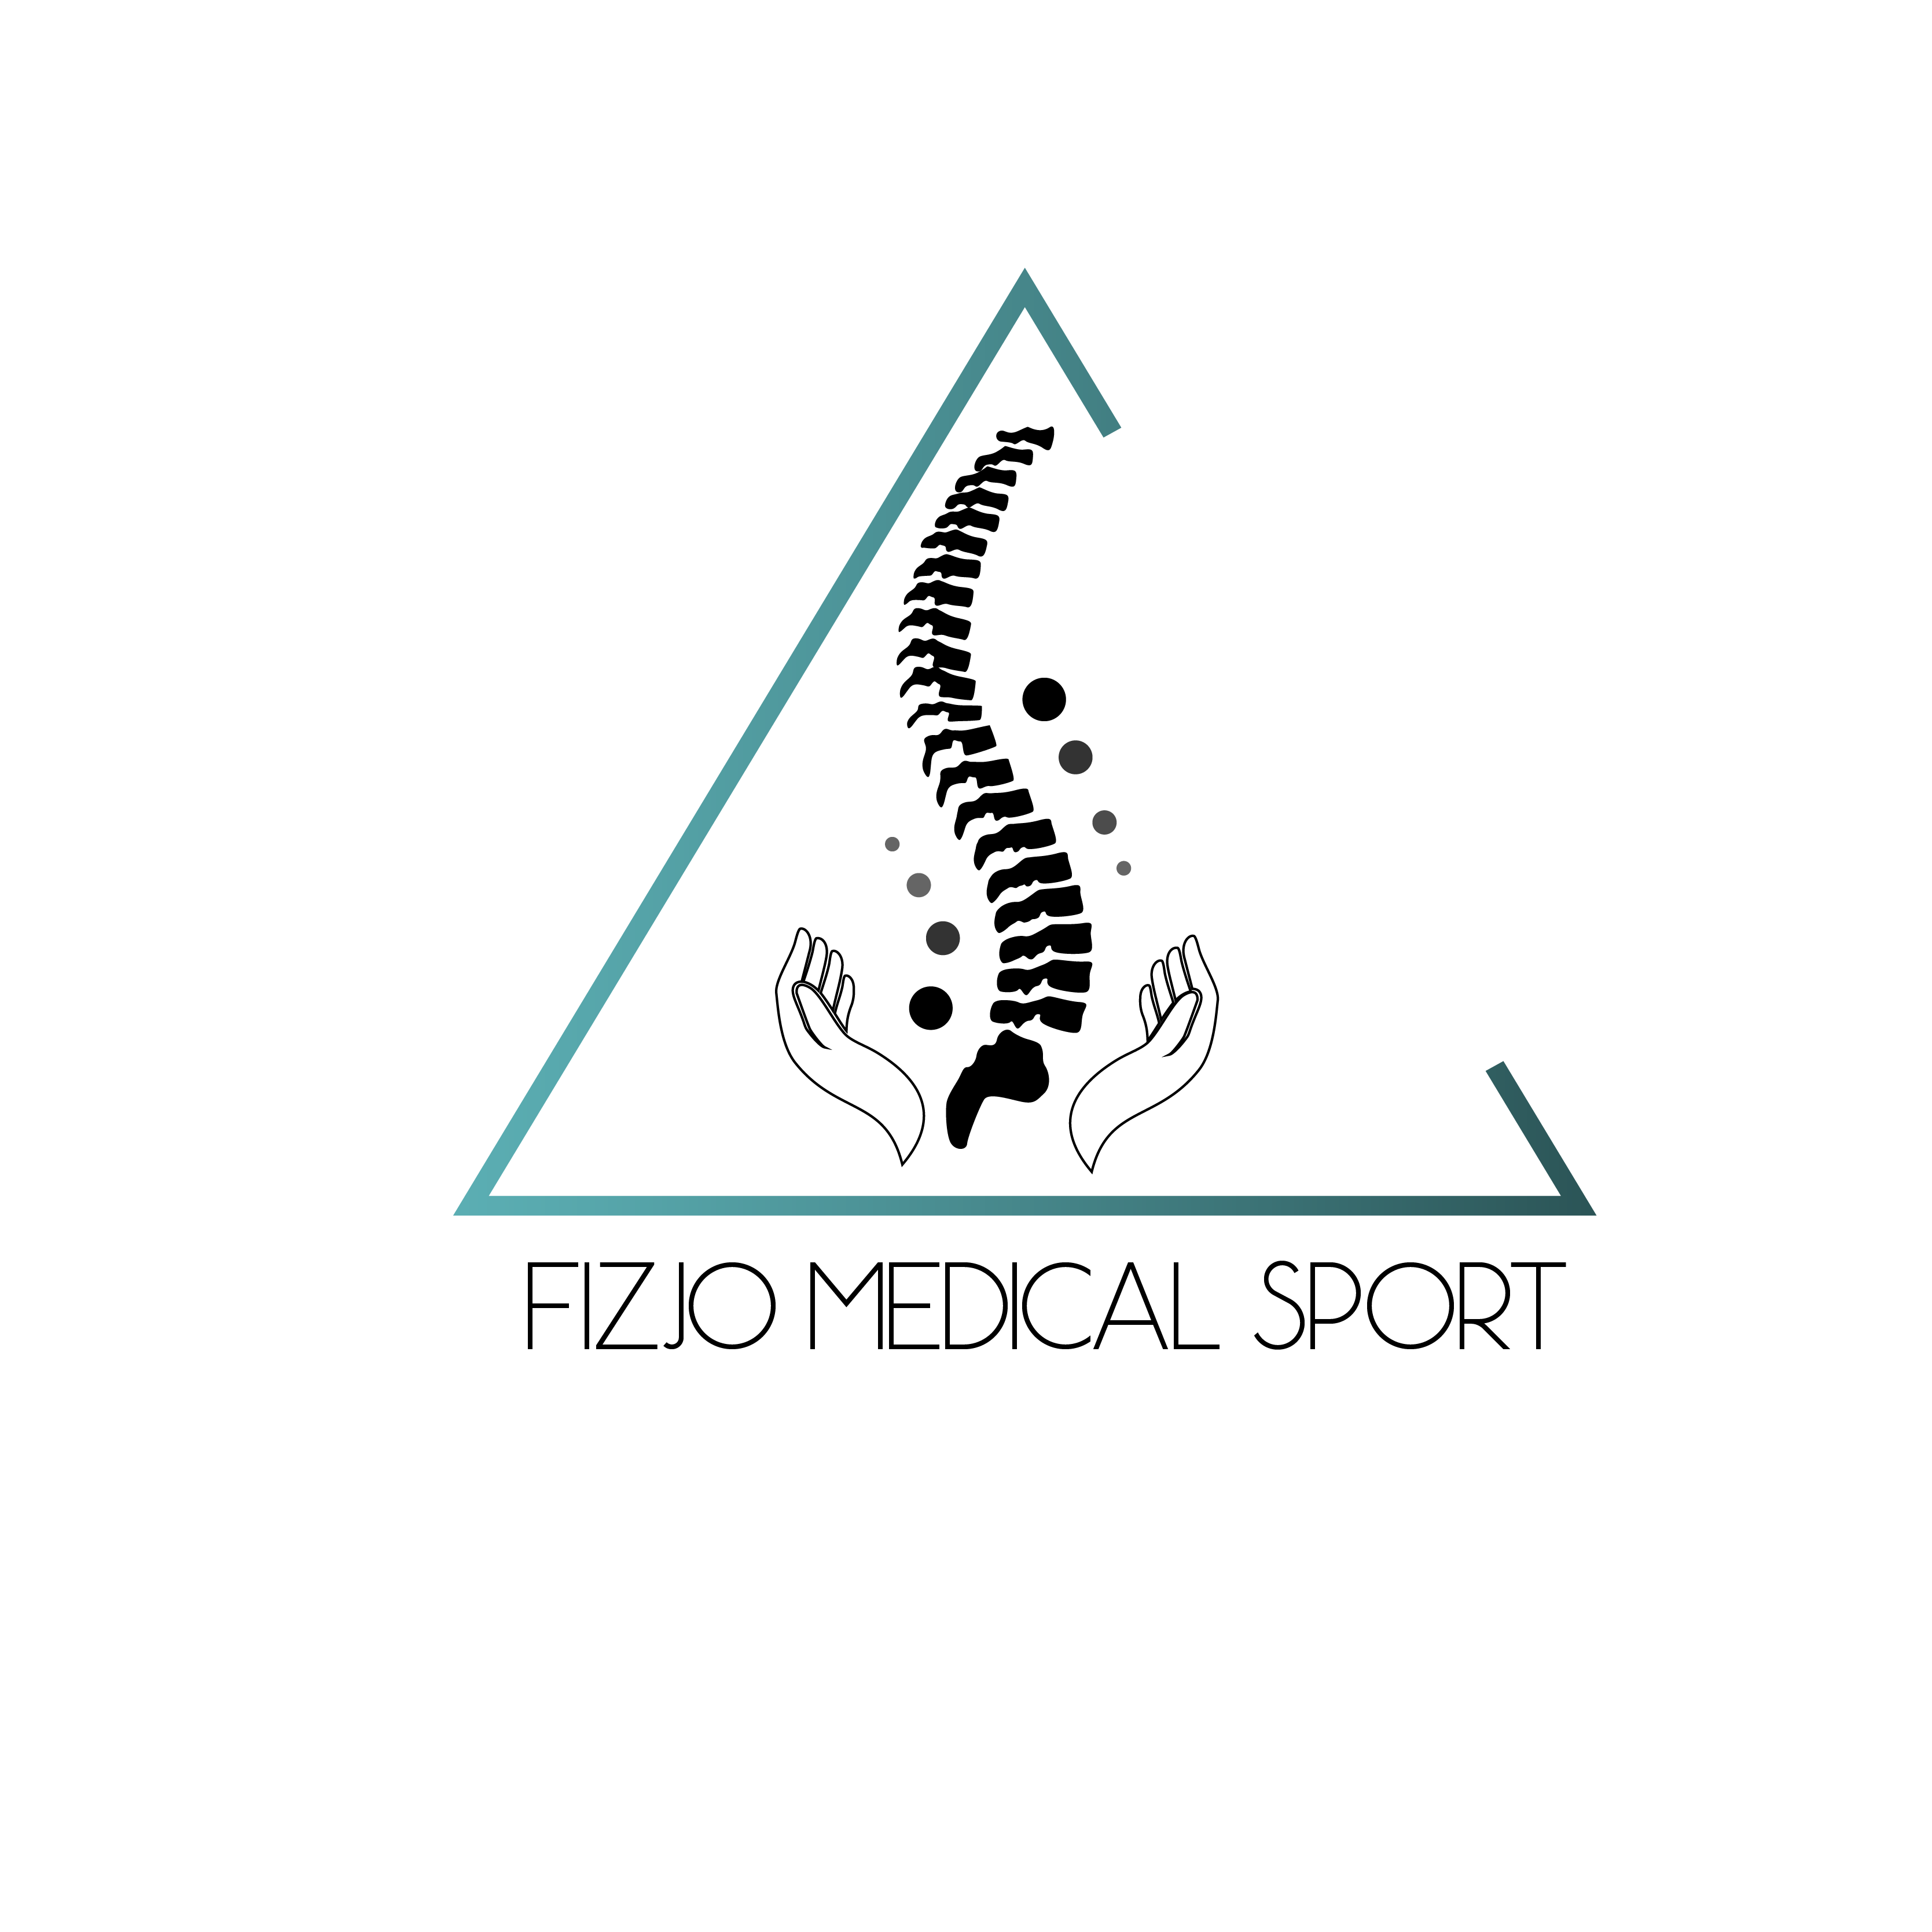 Logo z momtywem kręgosłupa otoczonego dłońmy, umieszczonego w niebieskim trójkącie z nazwą fizjo medical sport